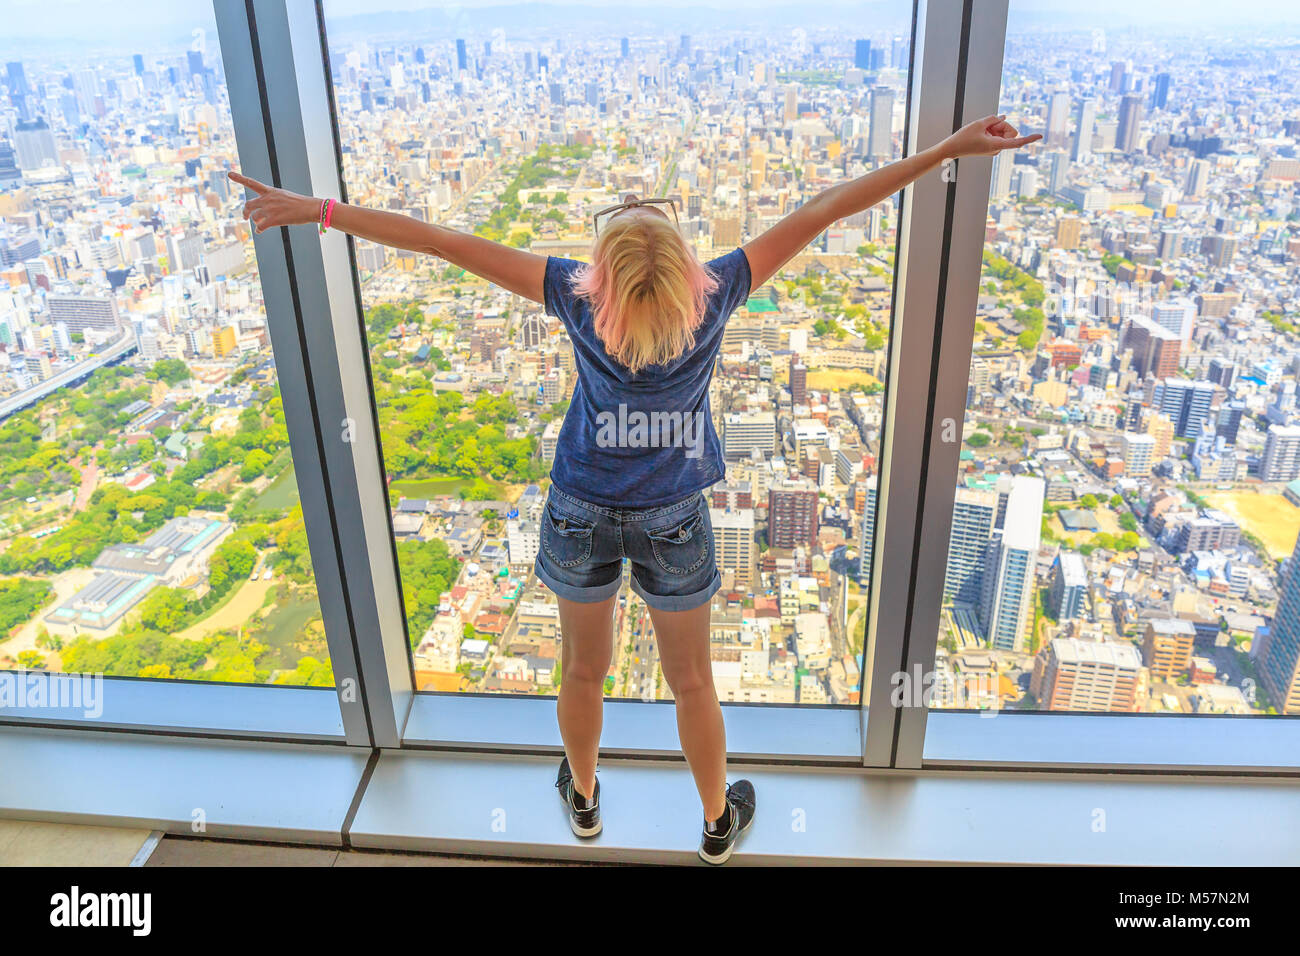 Luftbild Skyline von Osaka in Japan. Reise und Tourismus Asien Konzept. Junge kaukasier touristische Frau mit offenen Armen in Osaka Stadtbild von der Aussichtsplattform. Stockfoto